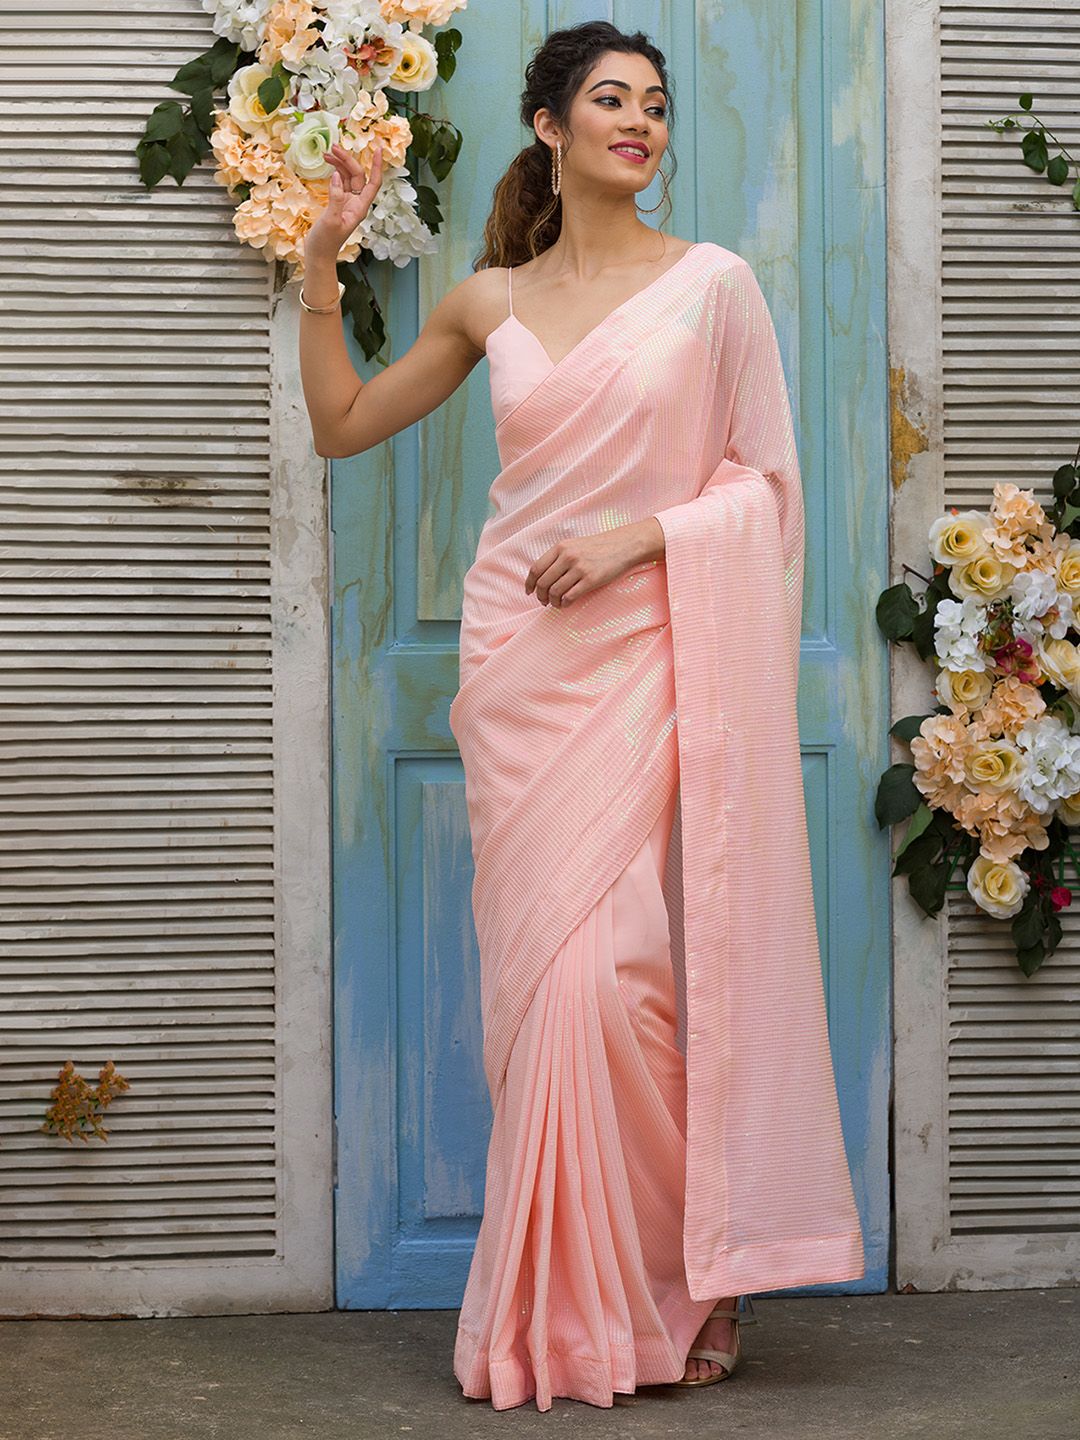 Floral Saree - Buy Floral Print Saree Online At Best Price – Koskii